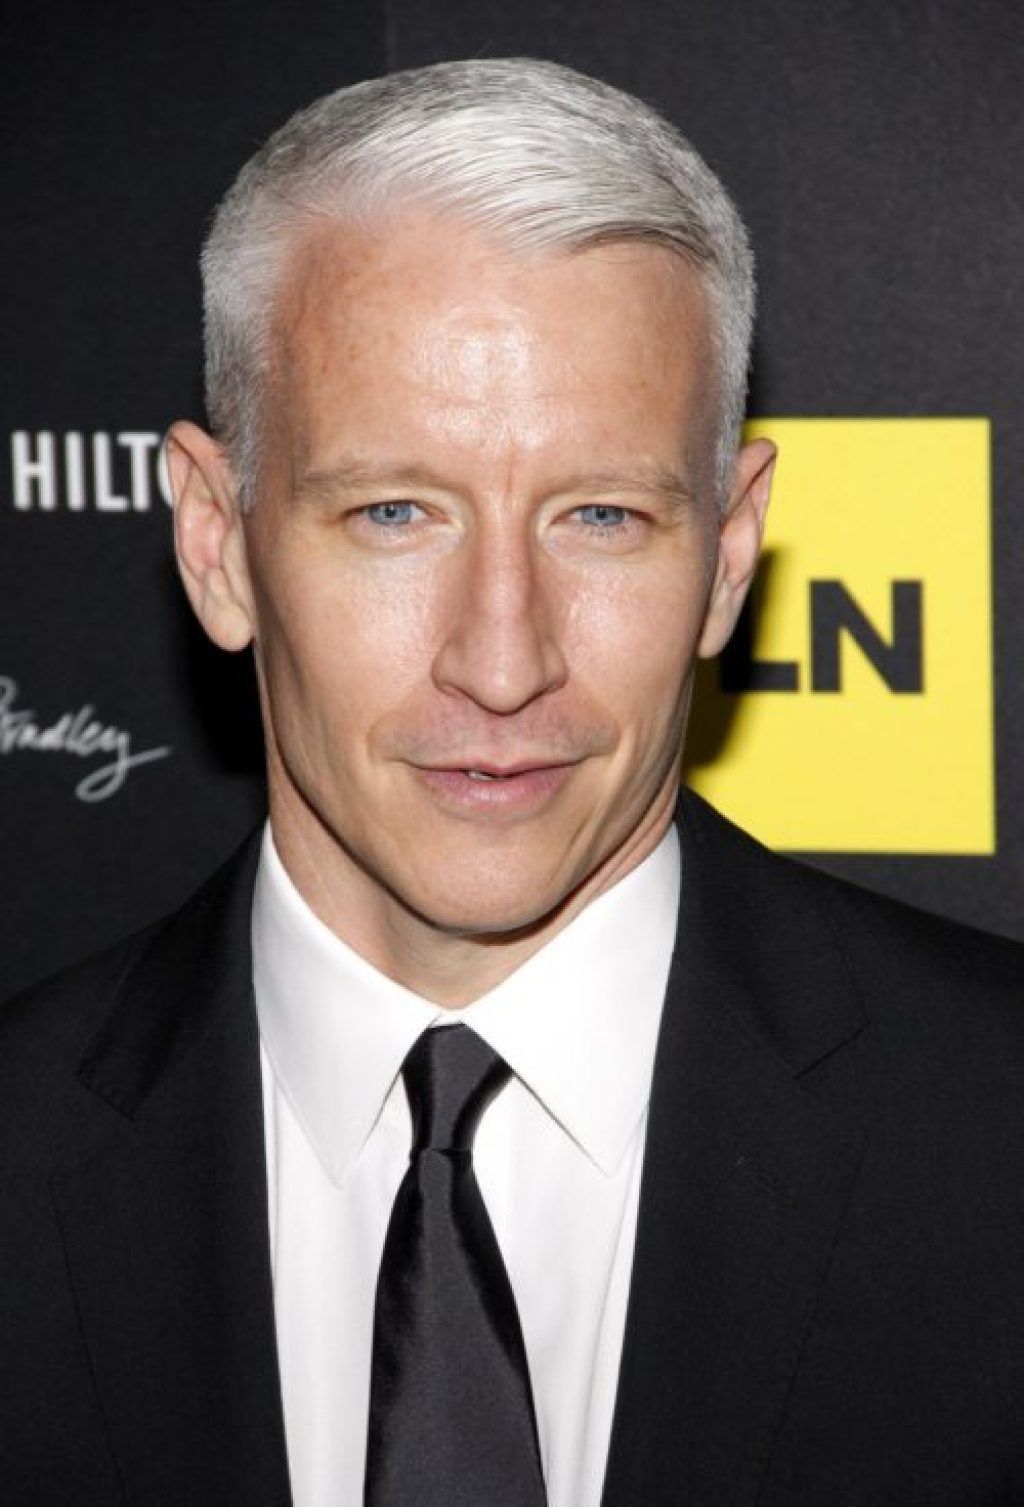 Anderson Cooper Ivy League Schools